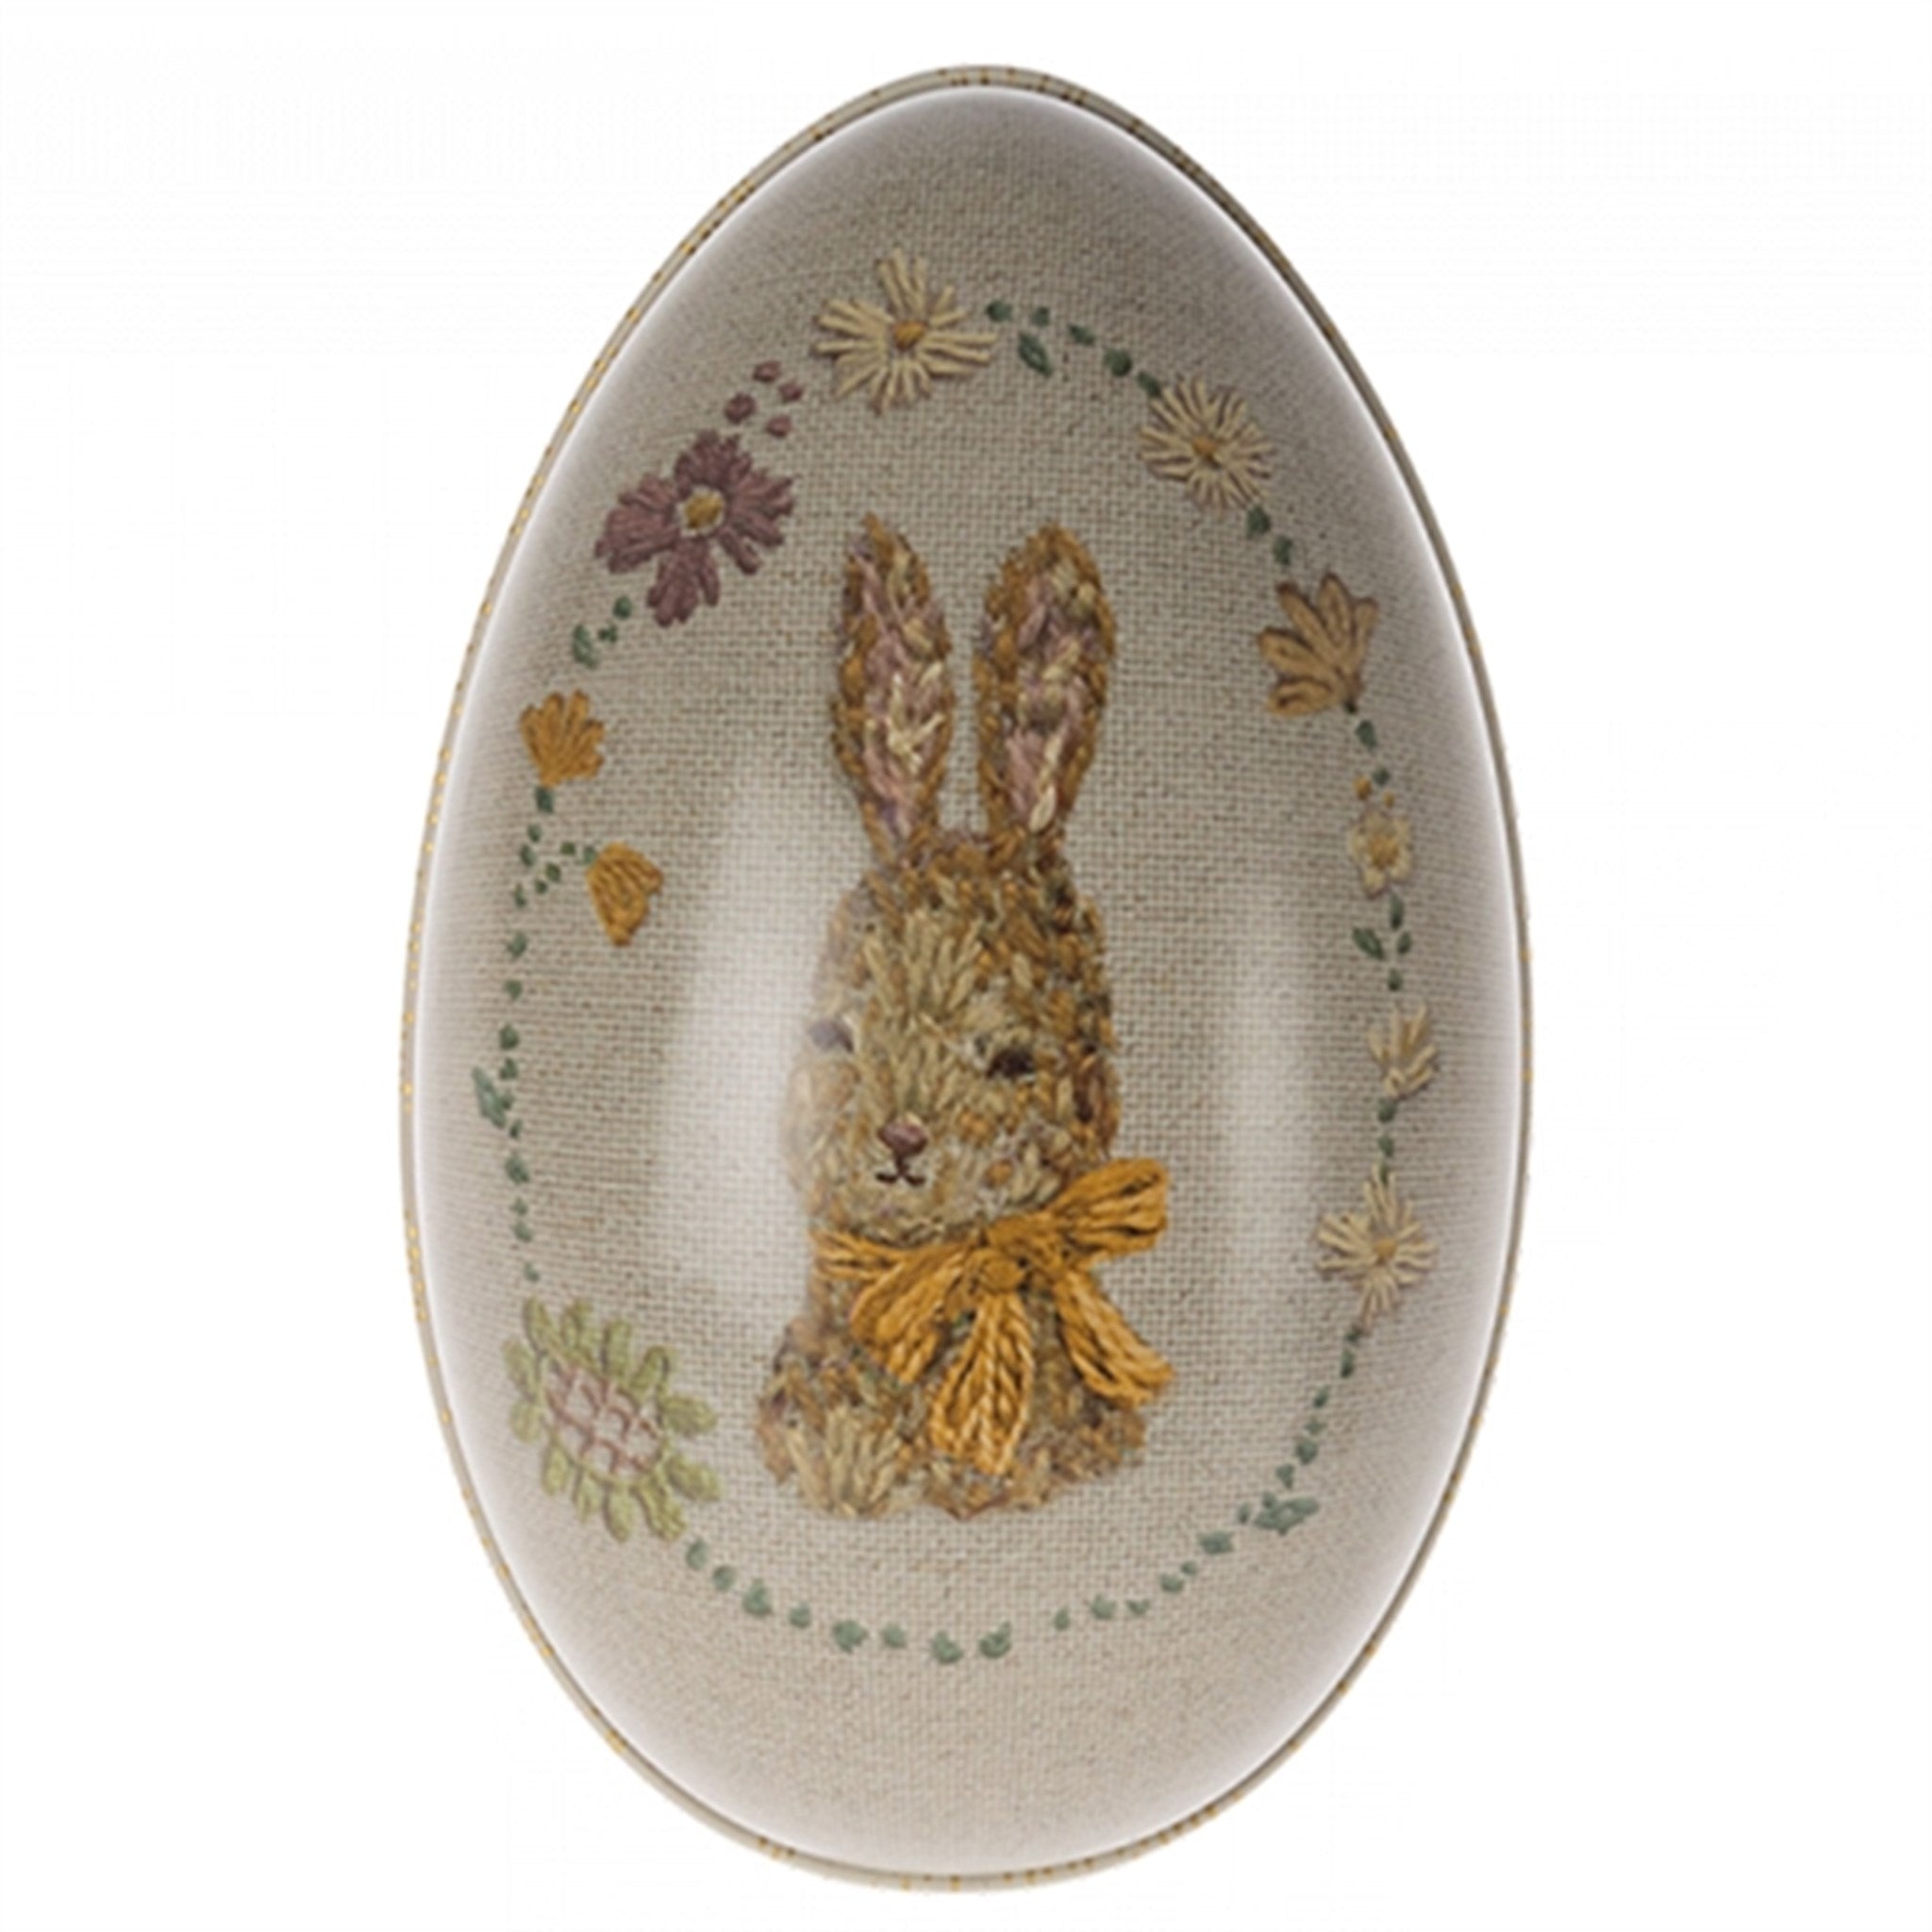 Maileg Easter Egg, Small - Bunny